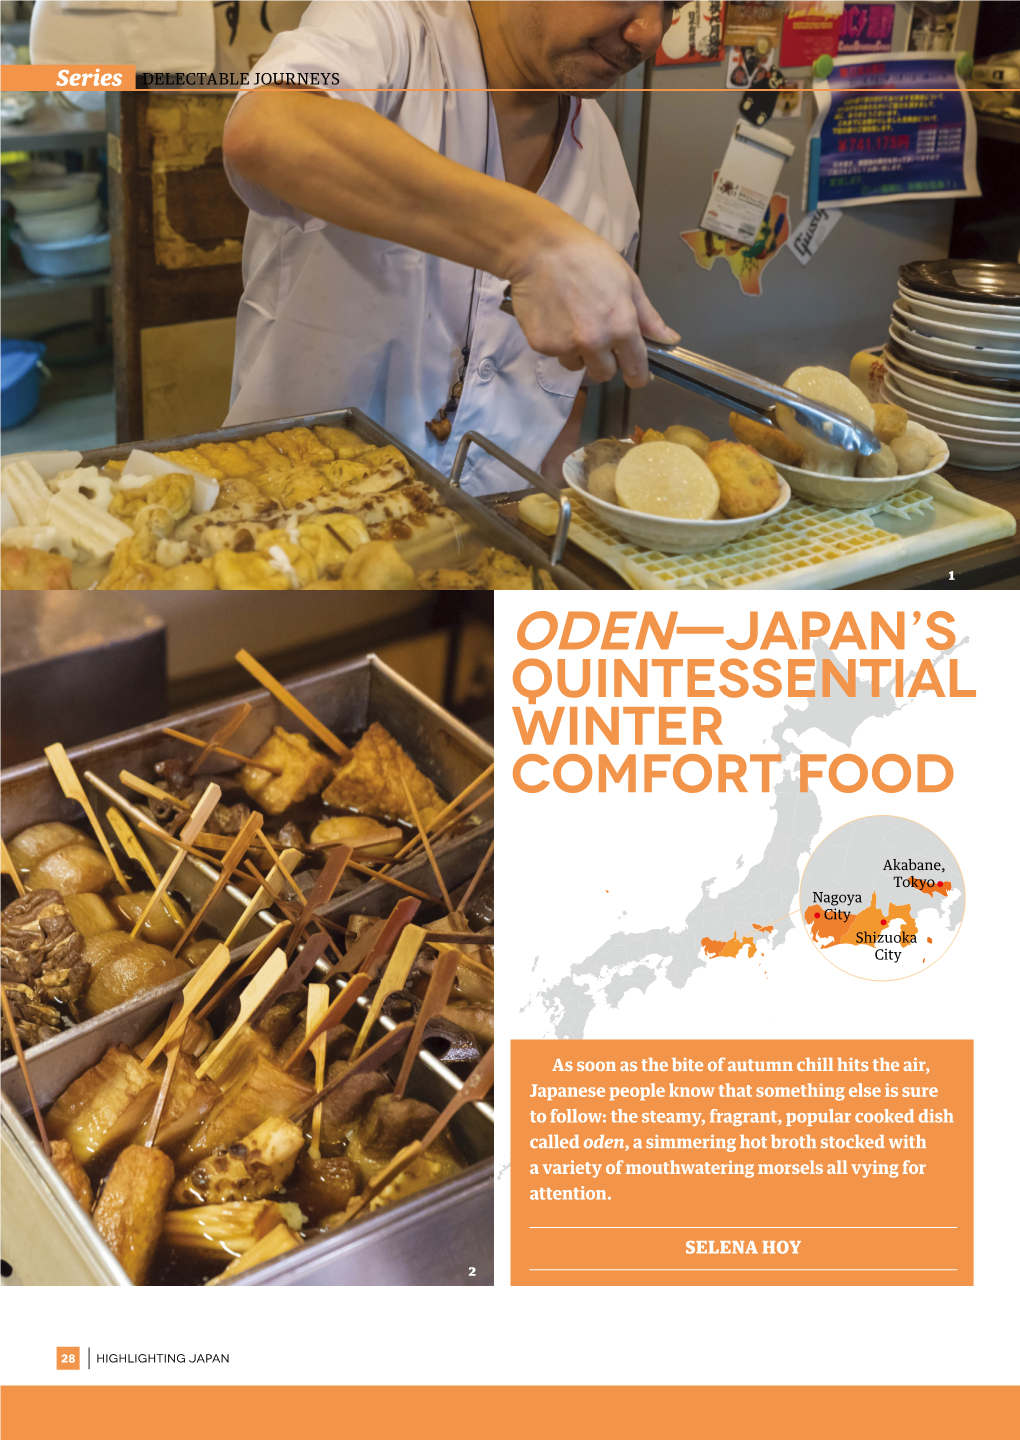 Oden—Japan's Quintessential Winter Comfort Food